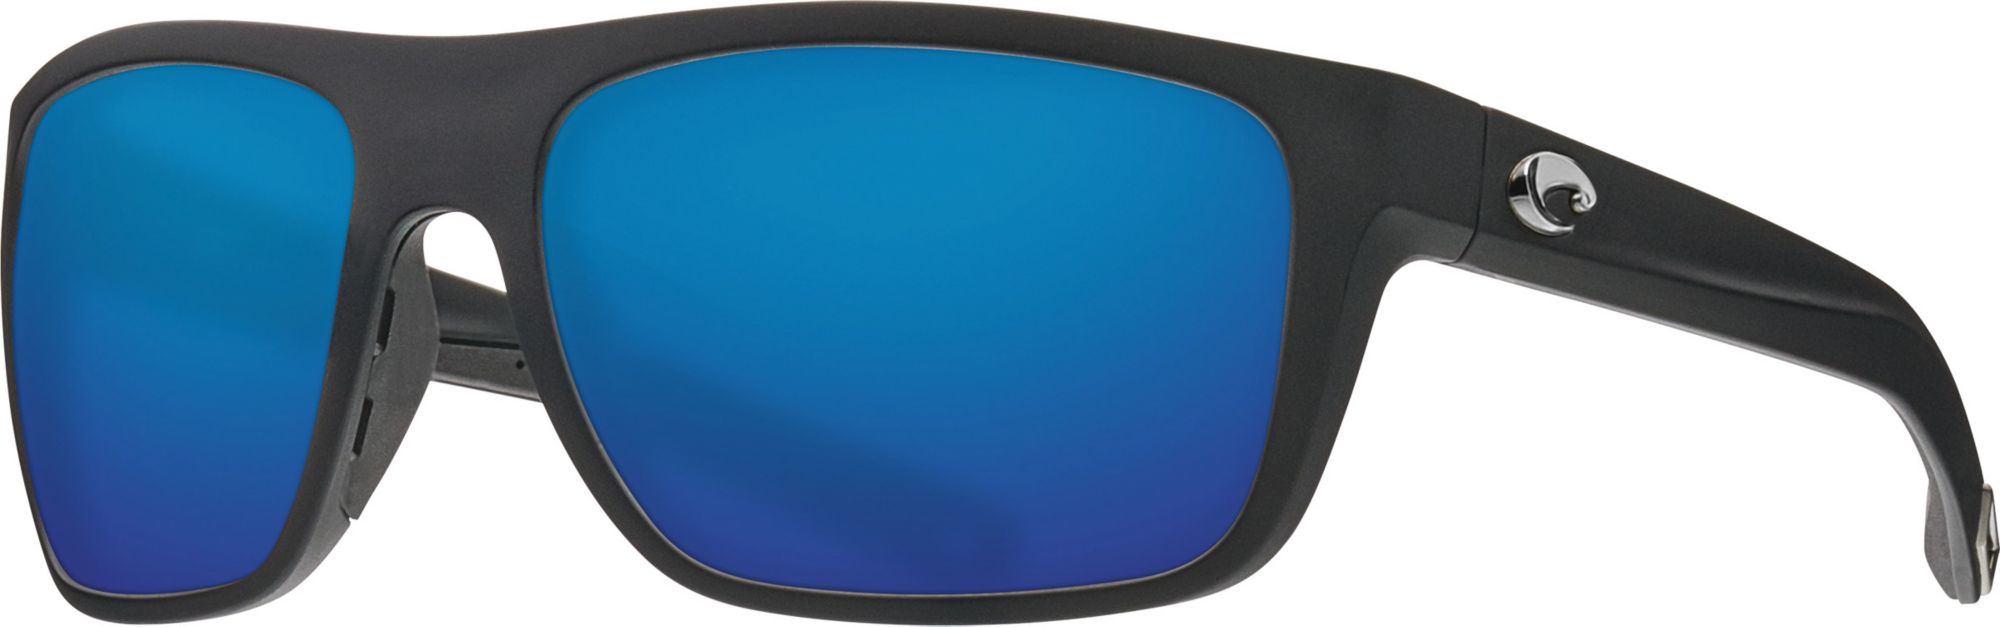 Photos - Sunglasses Costa Del Mar Broadbill 580G Polarized , Men's, Matte Blk Frame/ 